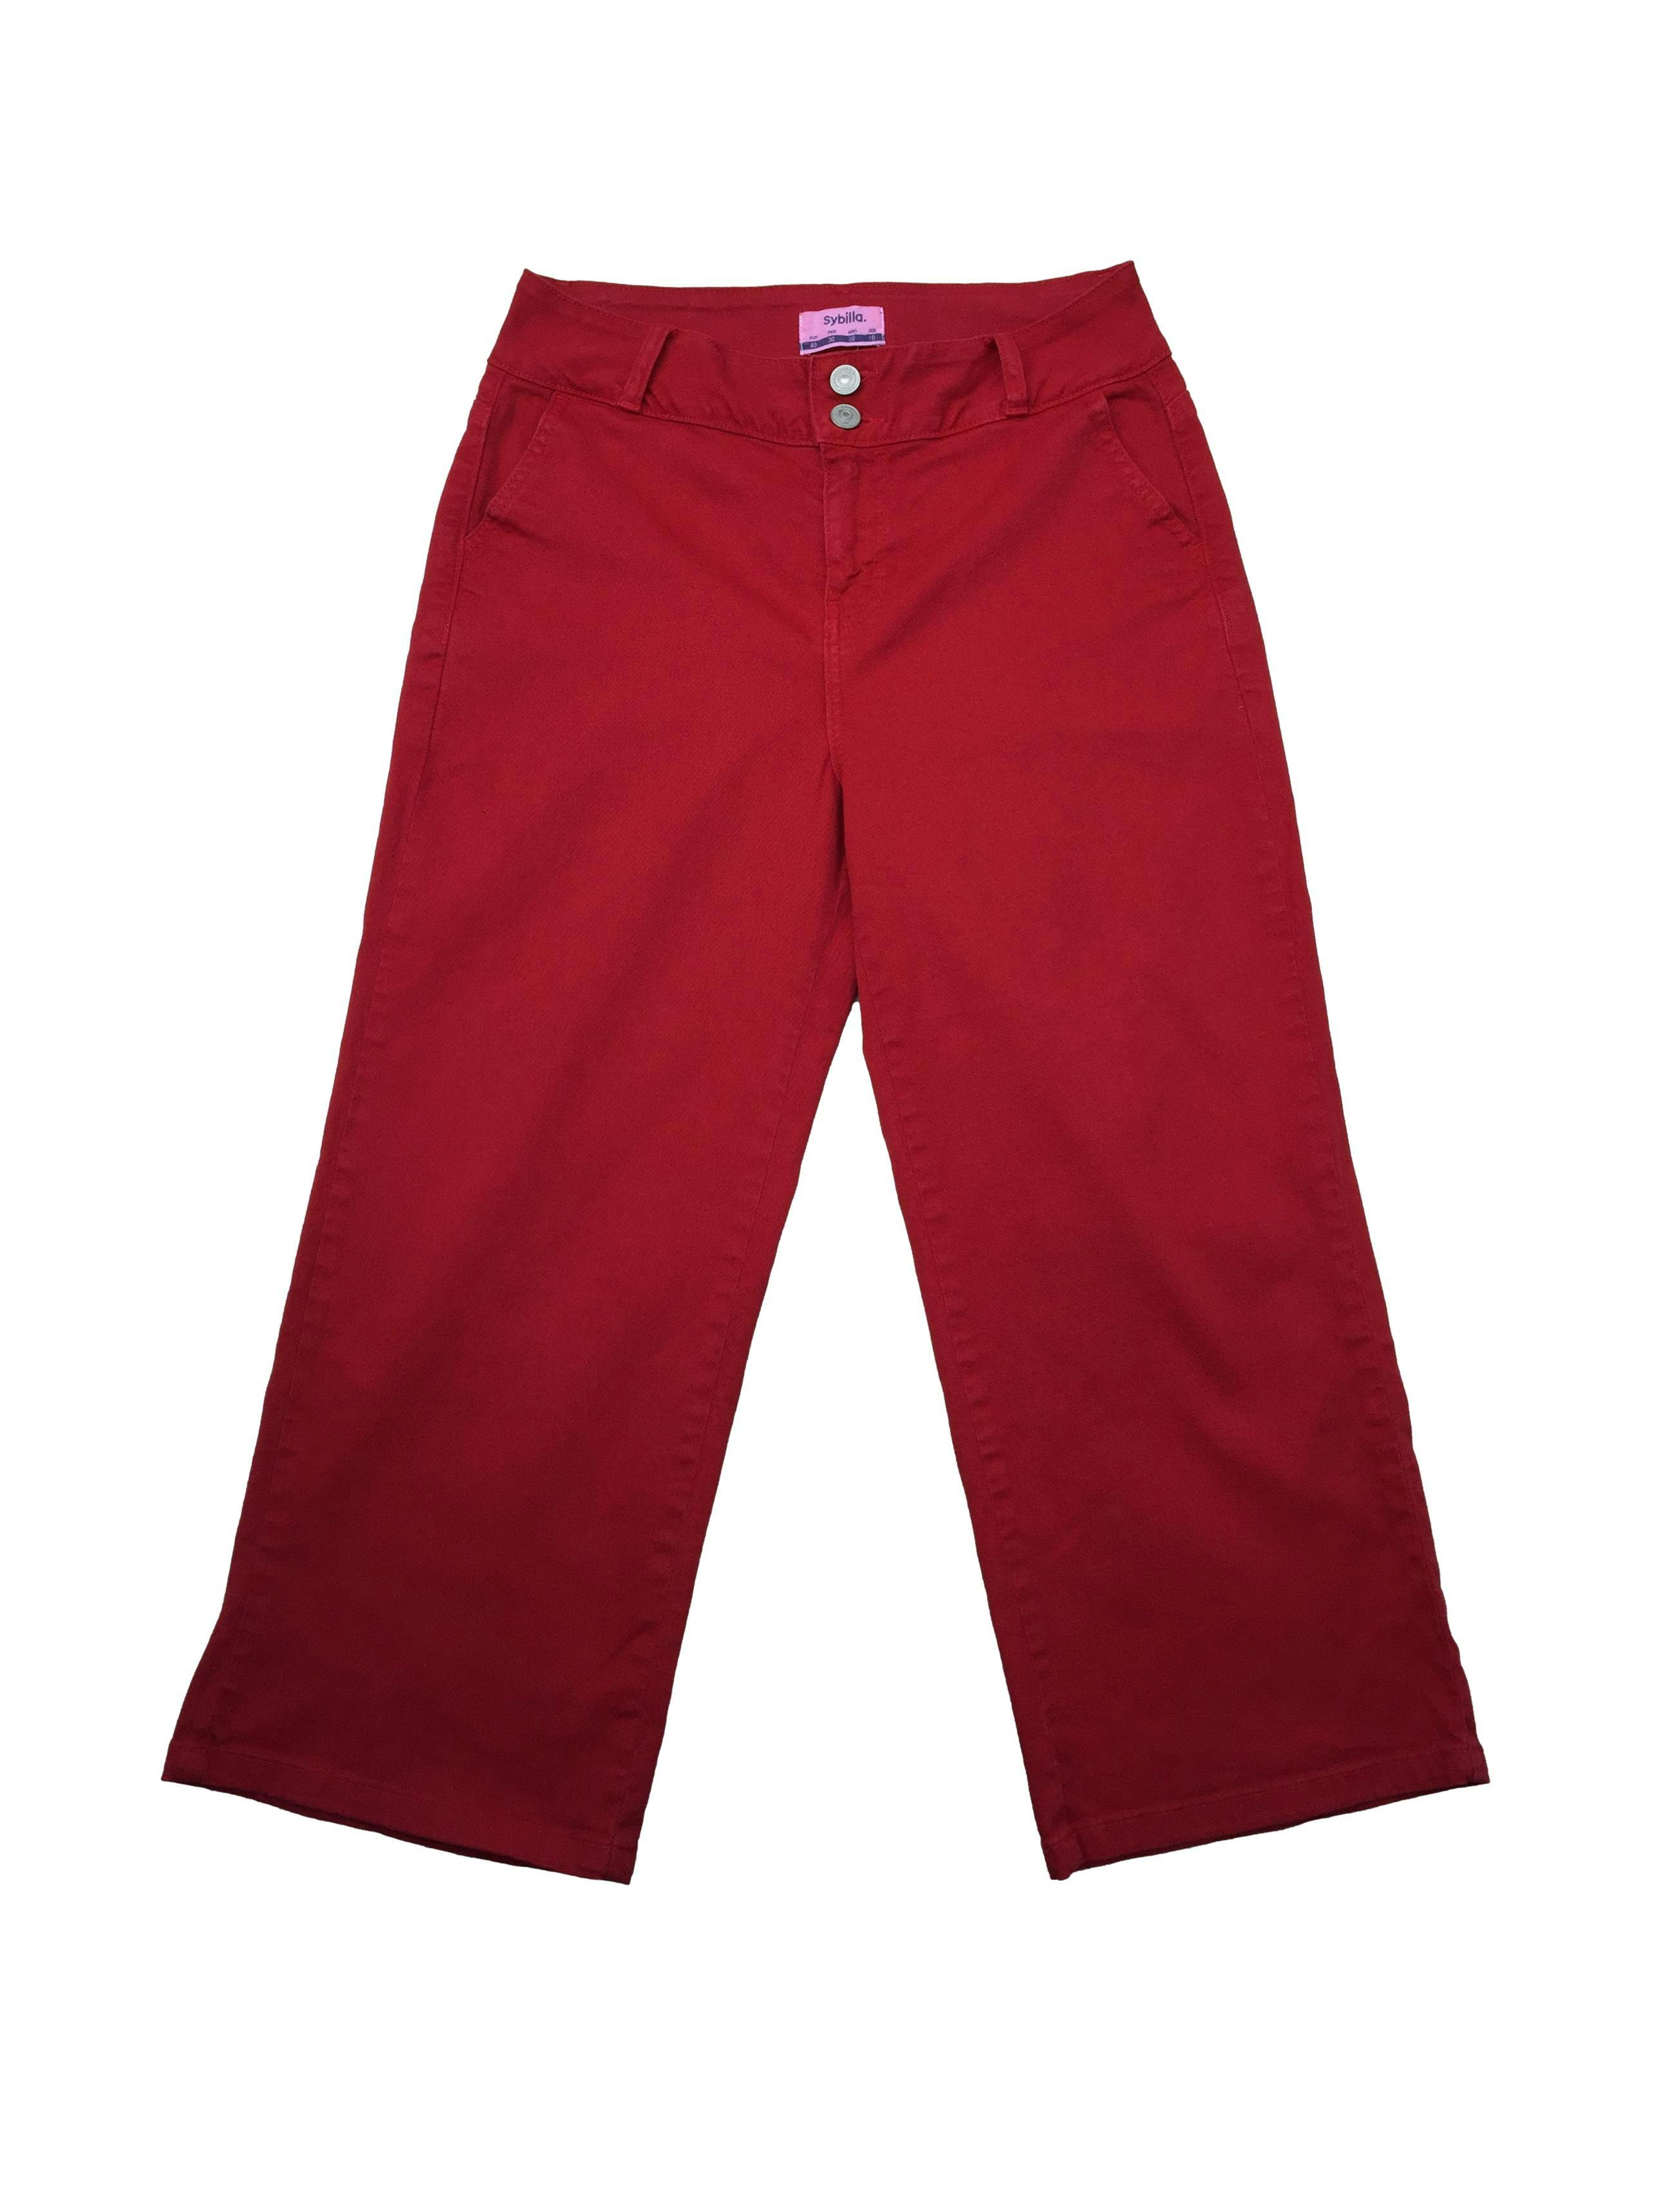 Pantalón Sybilla culotte rojo con correa, bolsillos. Cintura: 70cm, Tiro: 26cm, Largo: 81cm